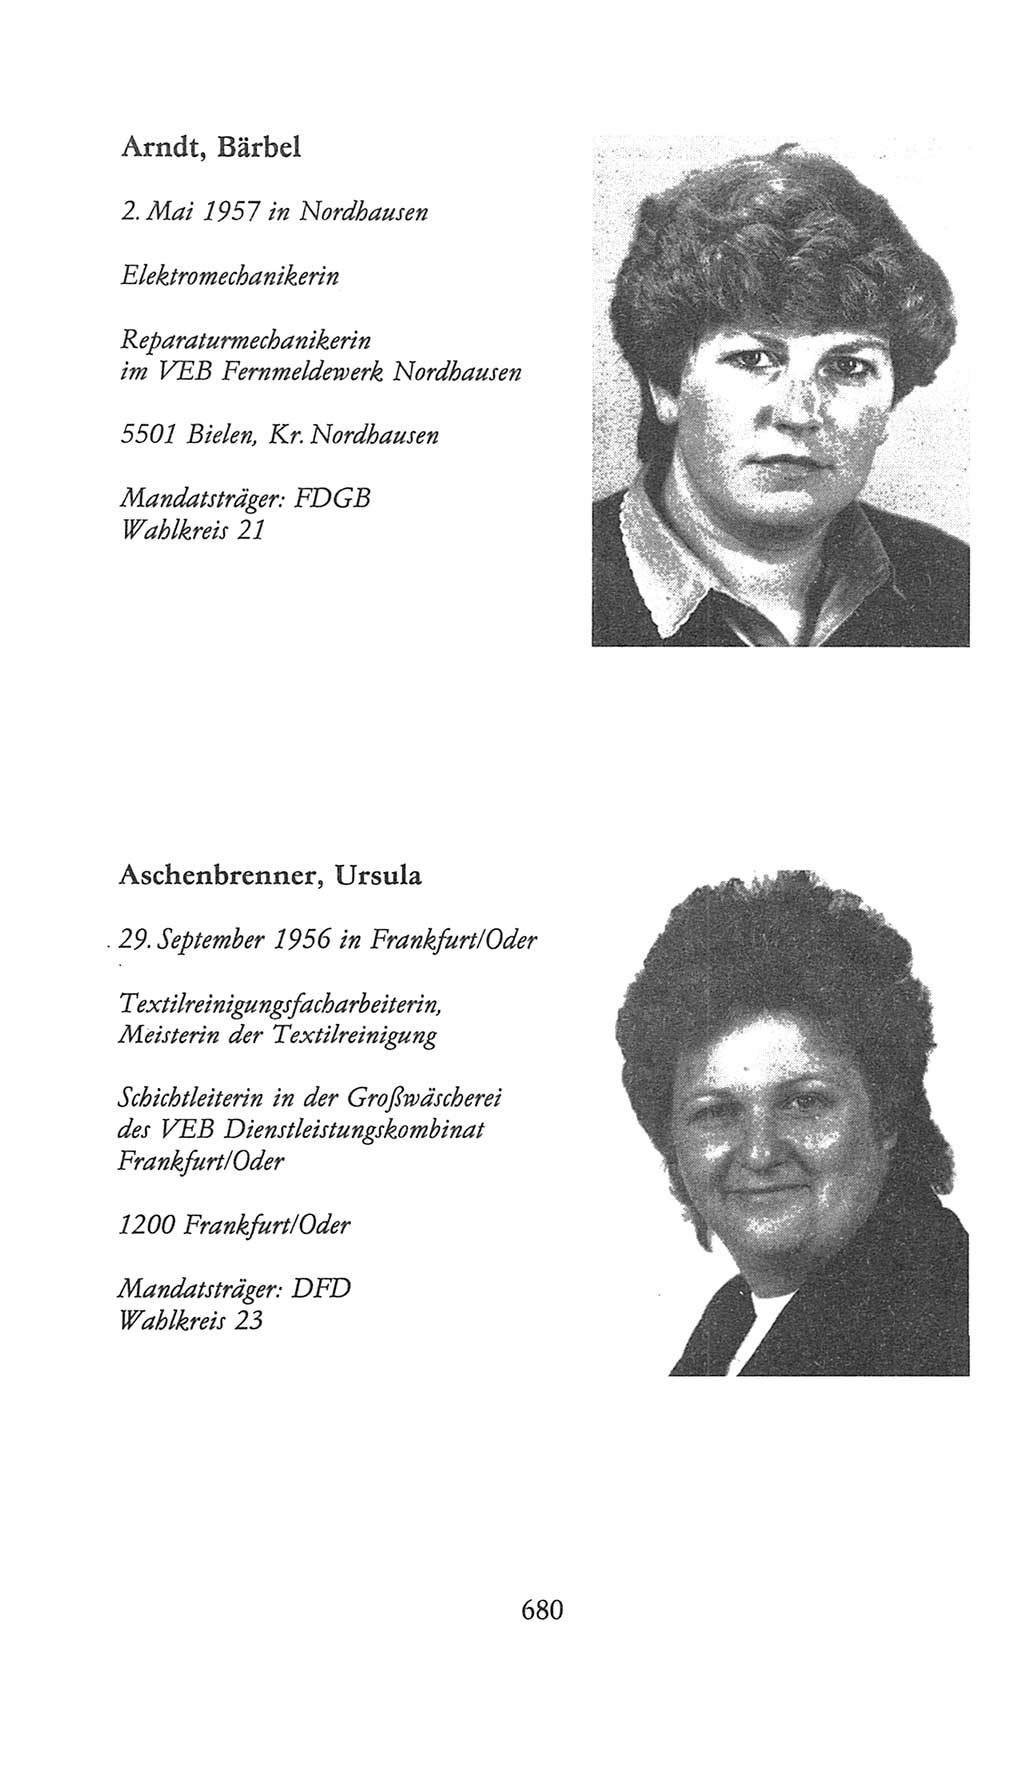 Volkskammer (VK) der Deutschen Demokratischen Republik (DDR), 9. Wahlperiode 1986-1990, Seite 680 (VK. DDR 9. WP. 1986-1990, S. 680)